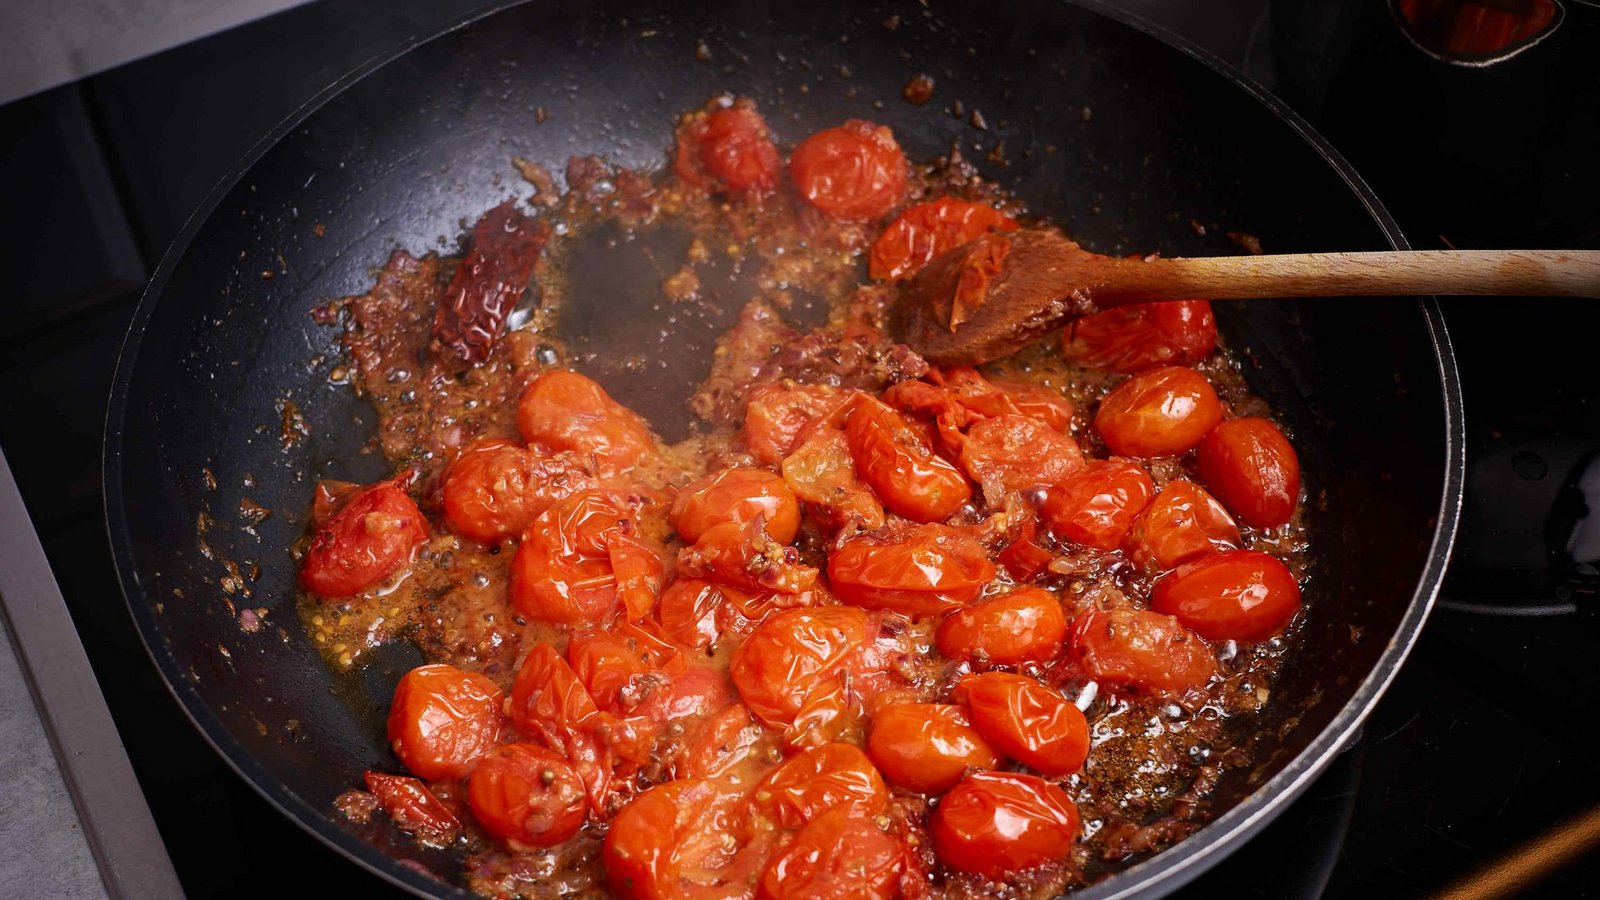 Die ersten zehn Zutaten (also alles außer Tomatenmark) in einer großen Pfanne mit hohem Rand bei mittlerer  Hitze unter häufigem Rühren 15 Minuten braten, bis die Tomaten zerfallen und die Zwiebeln weich und goldbraun sind. Sollte die Mischung beginnen anzusetzen oder anzubrennen, die Hitze reduzieren.Die Habanero entsorgen (oder vor dem Entfernen mit einem Löffelrücken ausdrücken, wenn ihr es gern scharf mögt). Die Salsa mit dem Tomatenmark und 120g Wasser im Mixer sehr glatt pürieren. Wieder unter den Pfanneninhalt mischen und beiseitestellen. Den Backofengrill einschalten.Foto: red